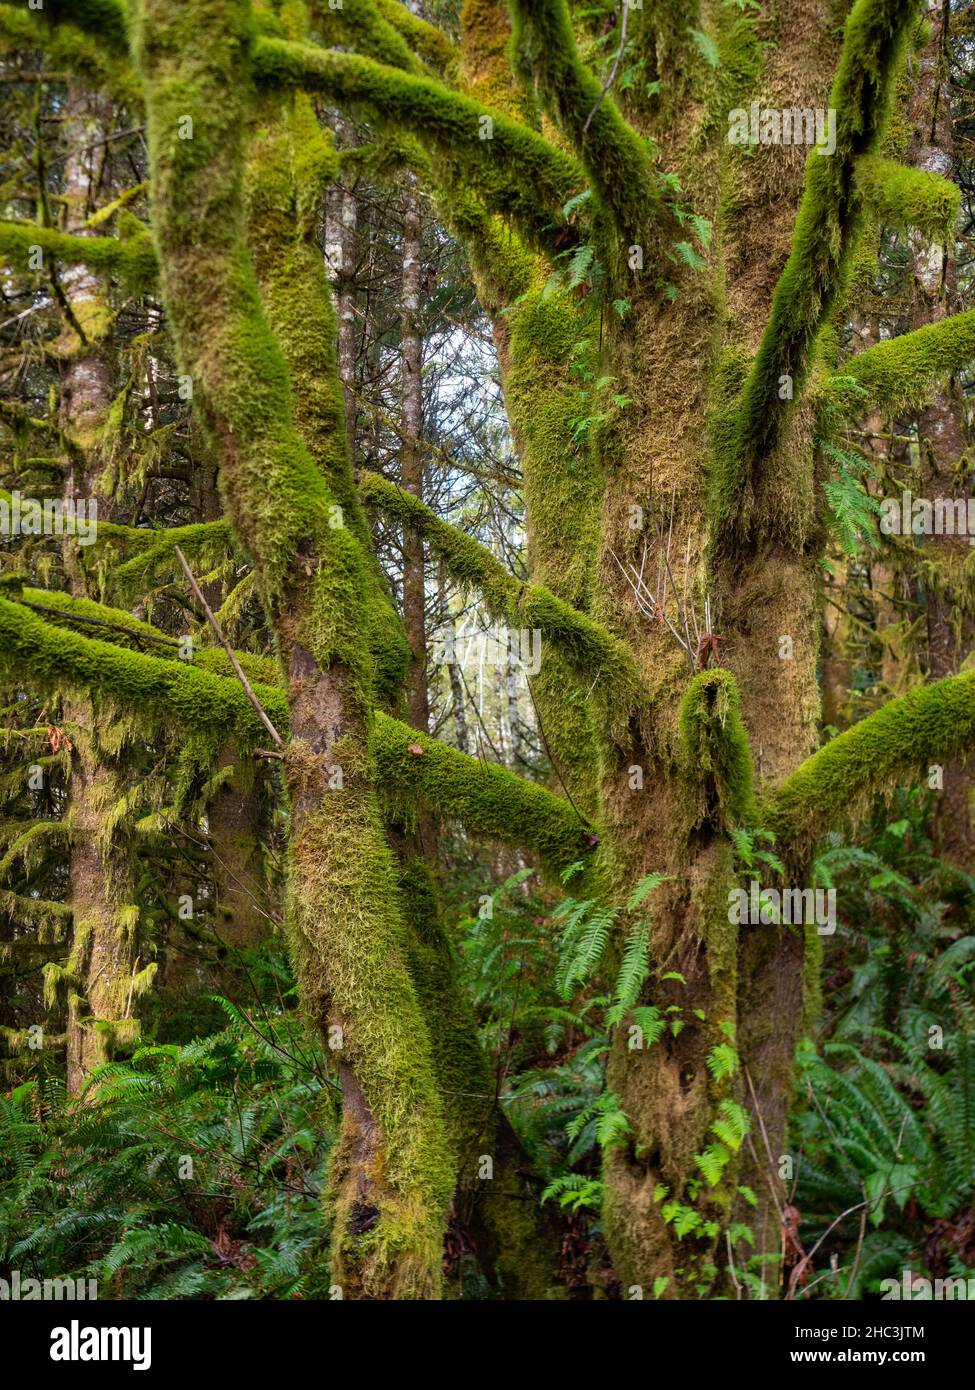 Cerca de troncos de árboles cubiertos de musgo, con helechos en el suelo del bosque. Fotografiado en el noroeste del Pacífico de los Estados Unidos con una profundidad de campo poco profunda. Foto de stock